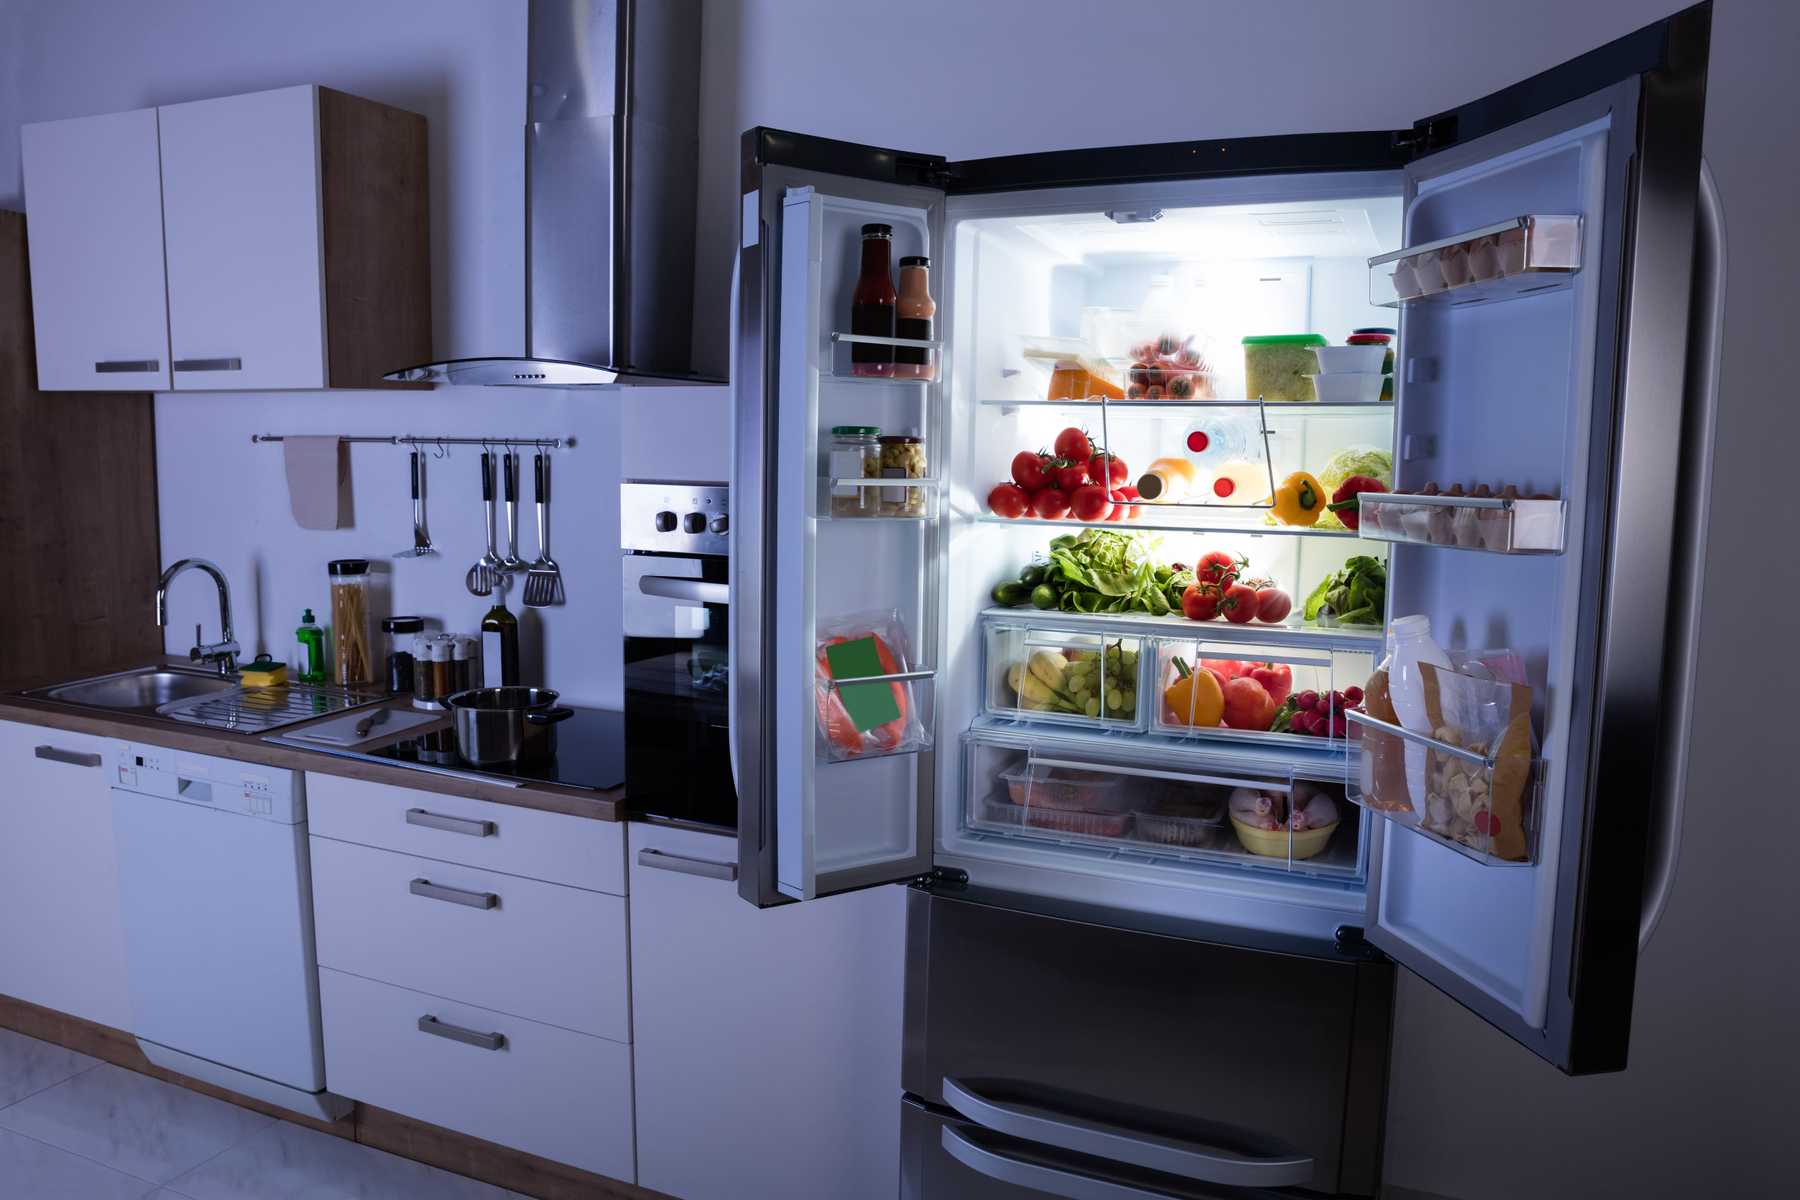 Vệ sinh tủ lạnh cần lưu ý những gì?